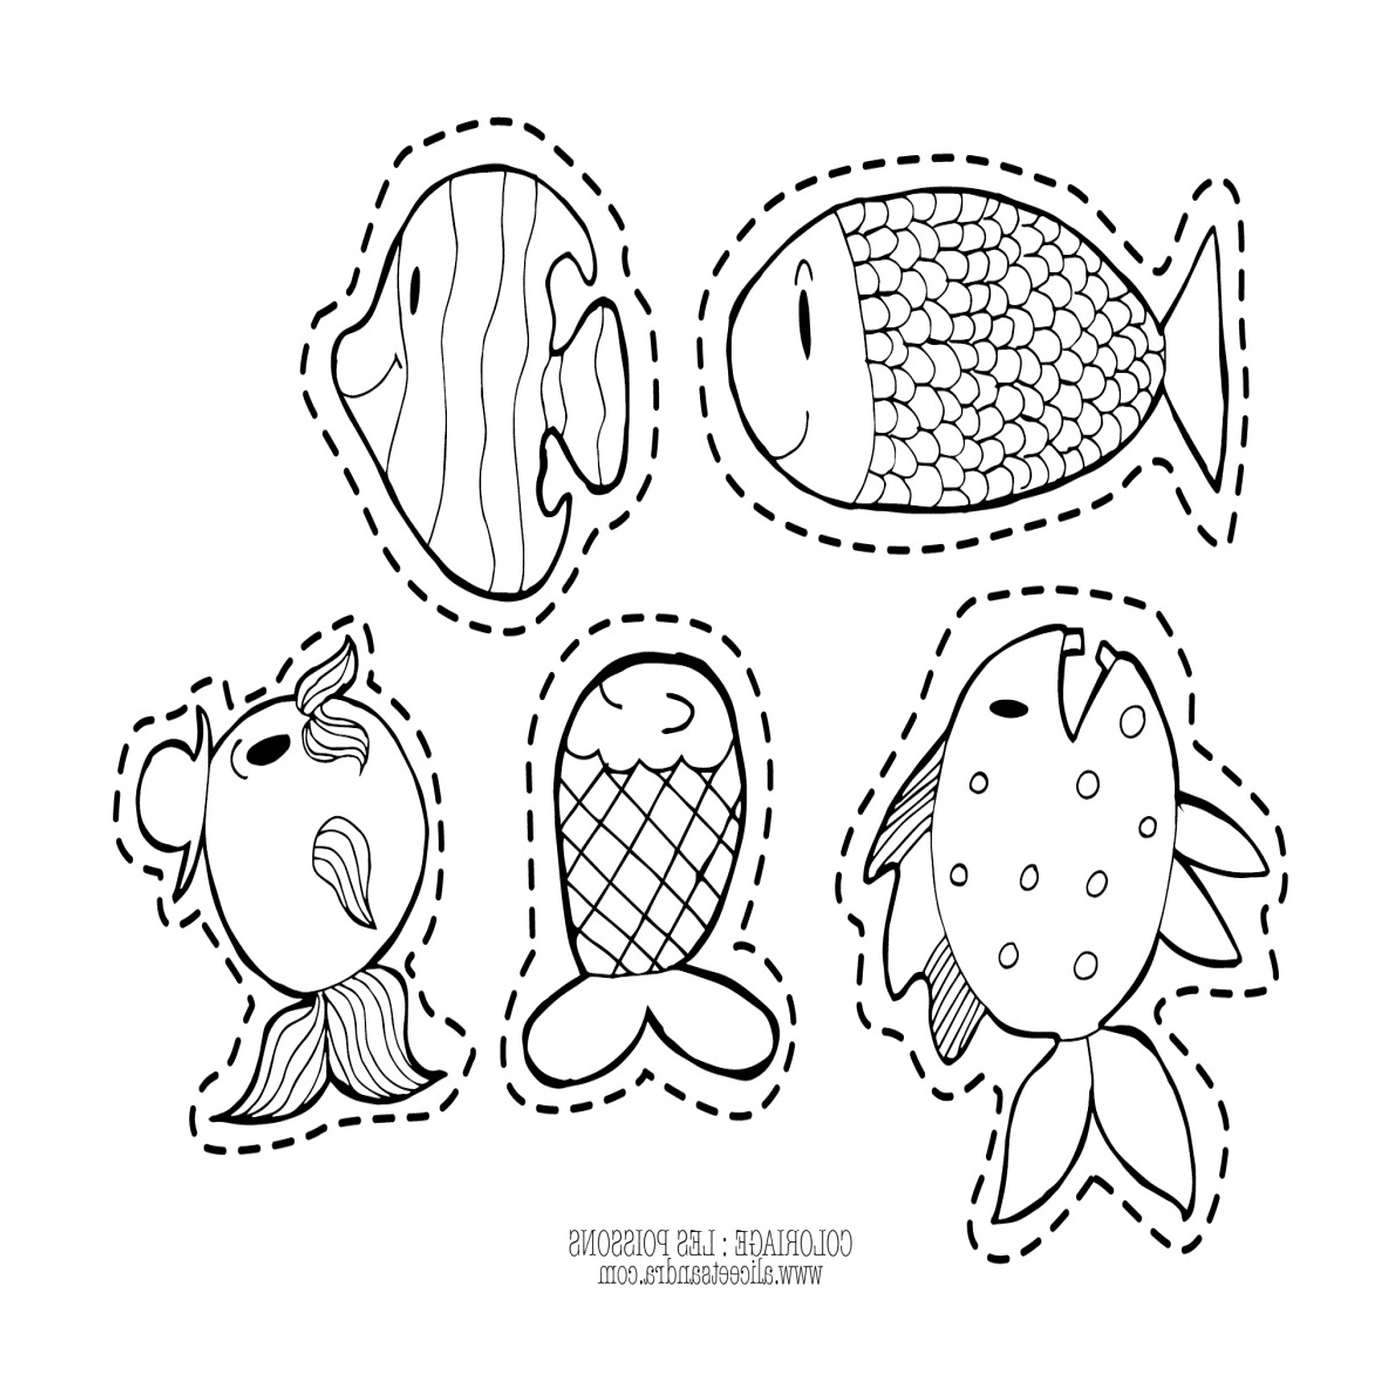  Cinco peces dibujados en una página 